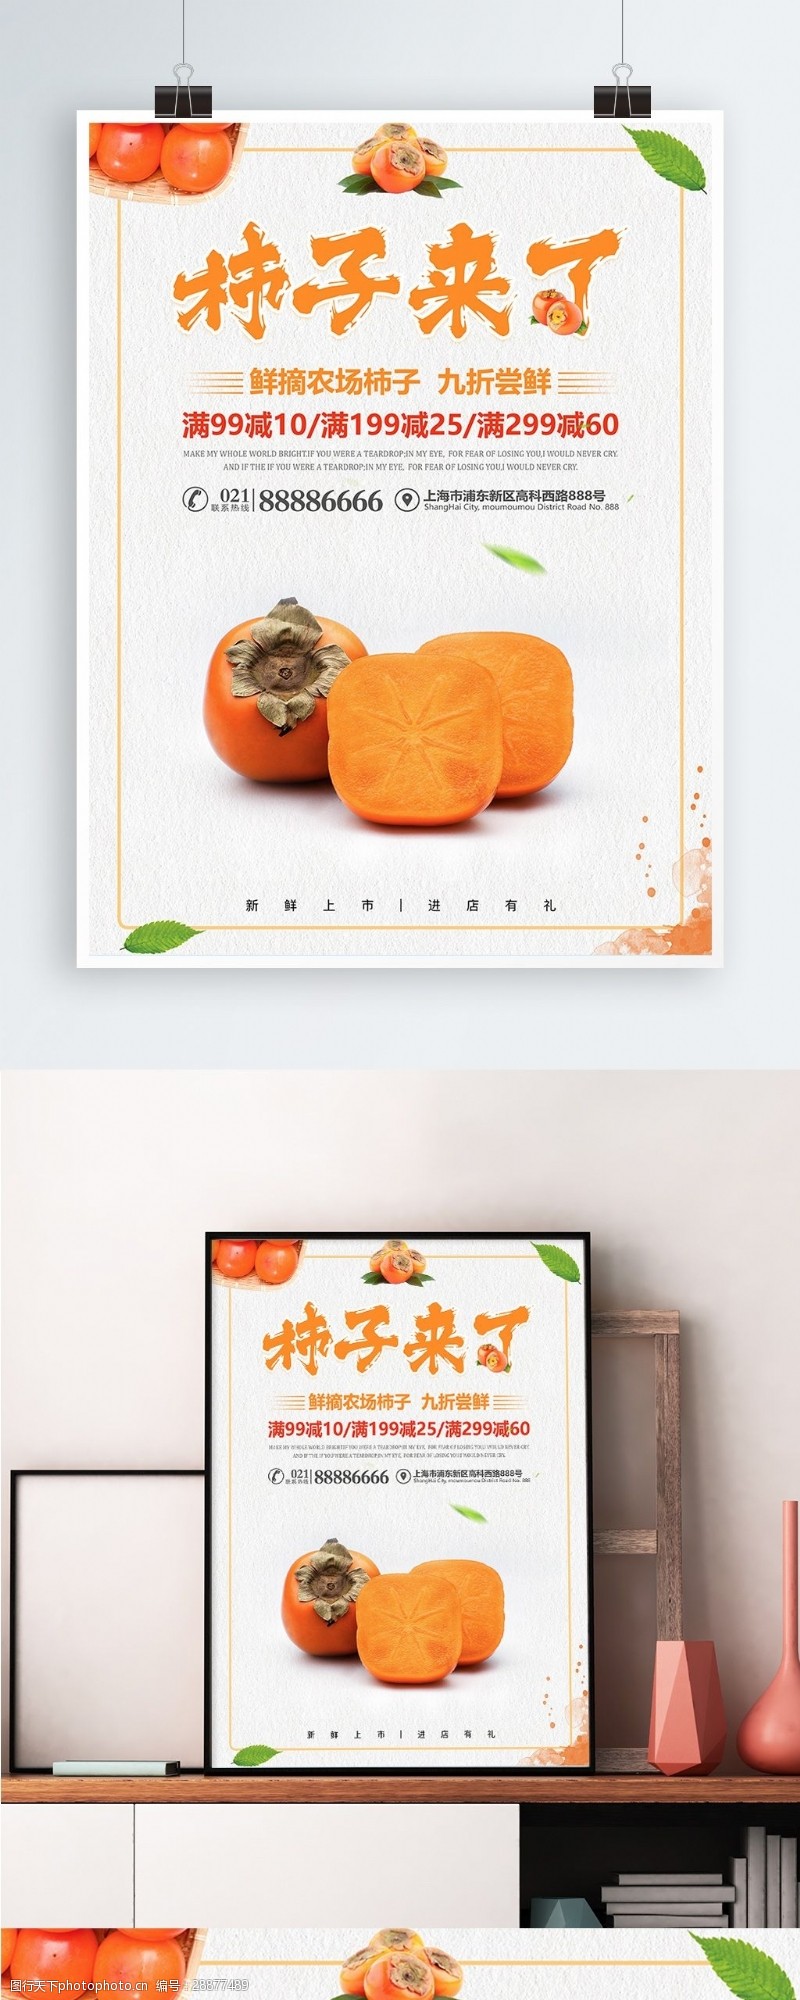 秋季促销活动秋冬季美食水果促销海报